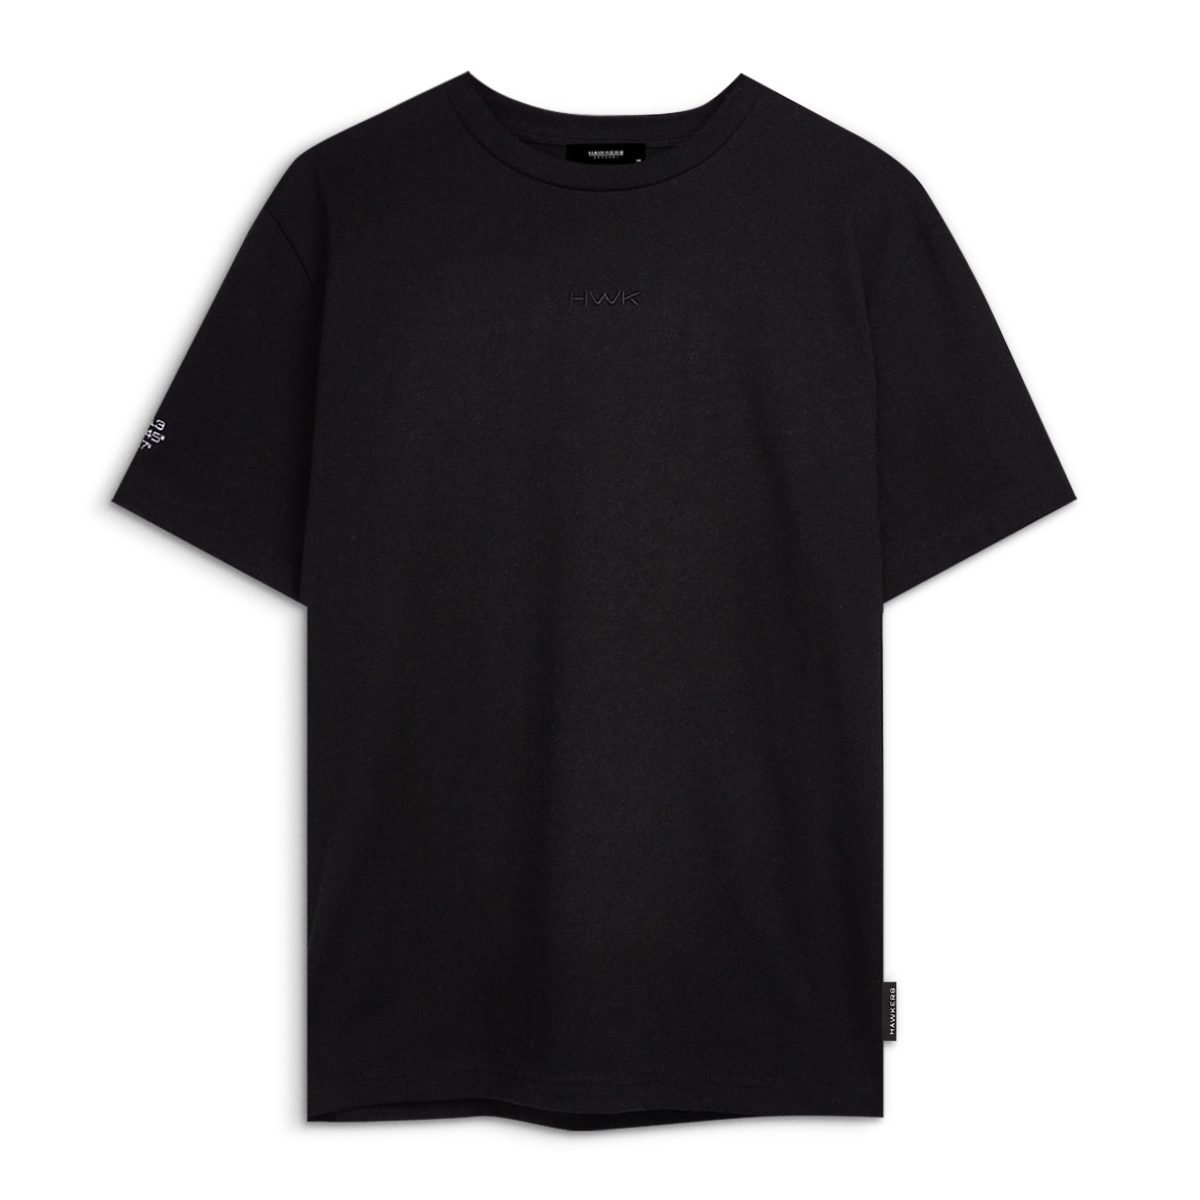 Lax T-shirt Black (xs)